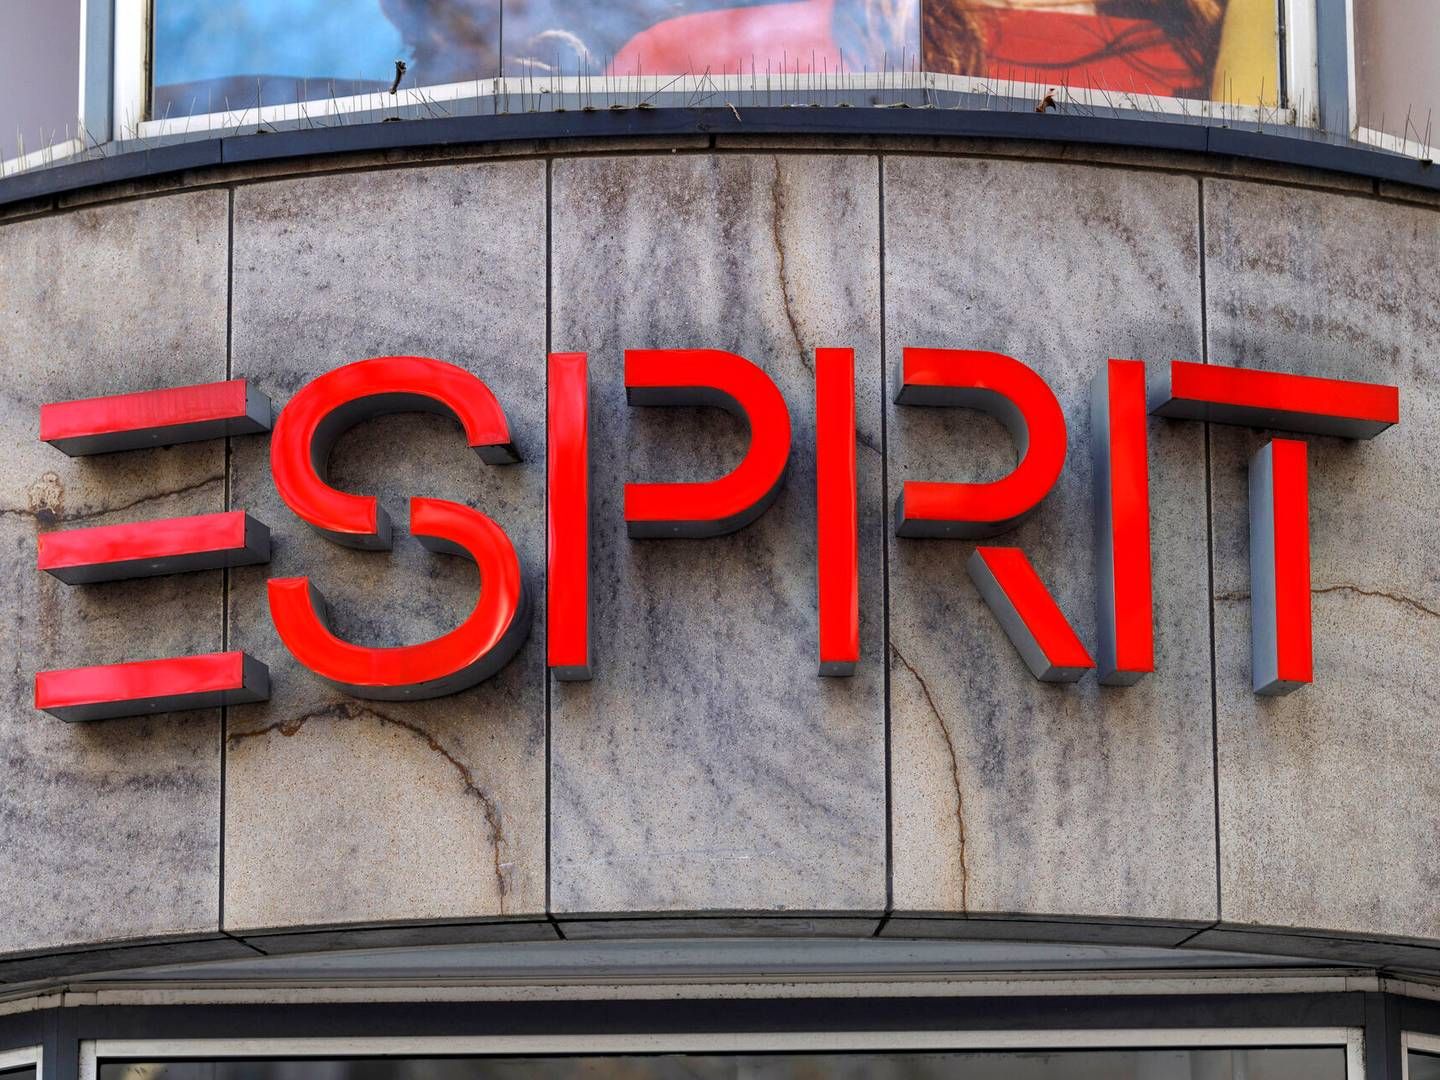 Esprit er til stede med salg af tøj i ca. 40 lande. | Foto: Christoph Hardt/AP/Ritzau Scanpix